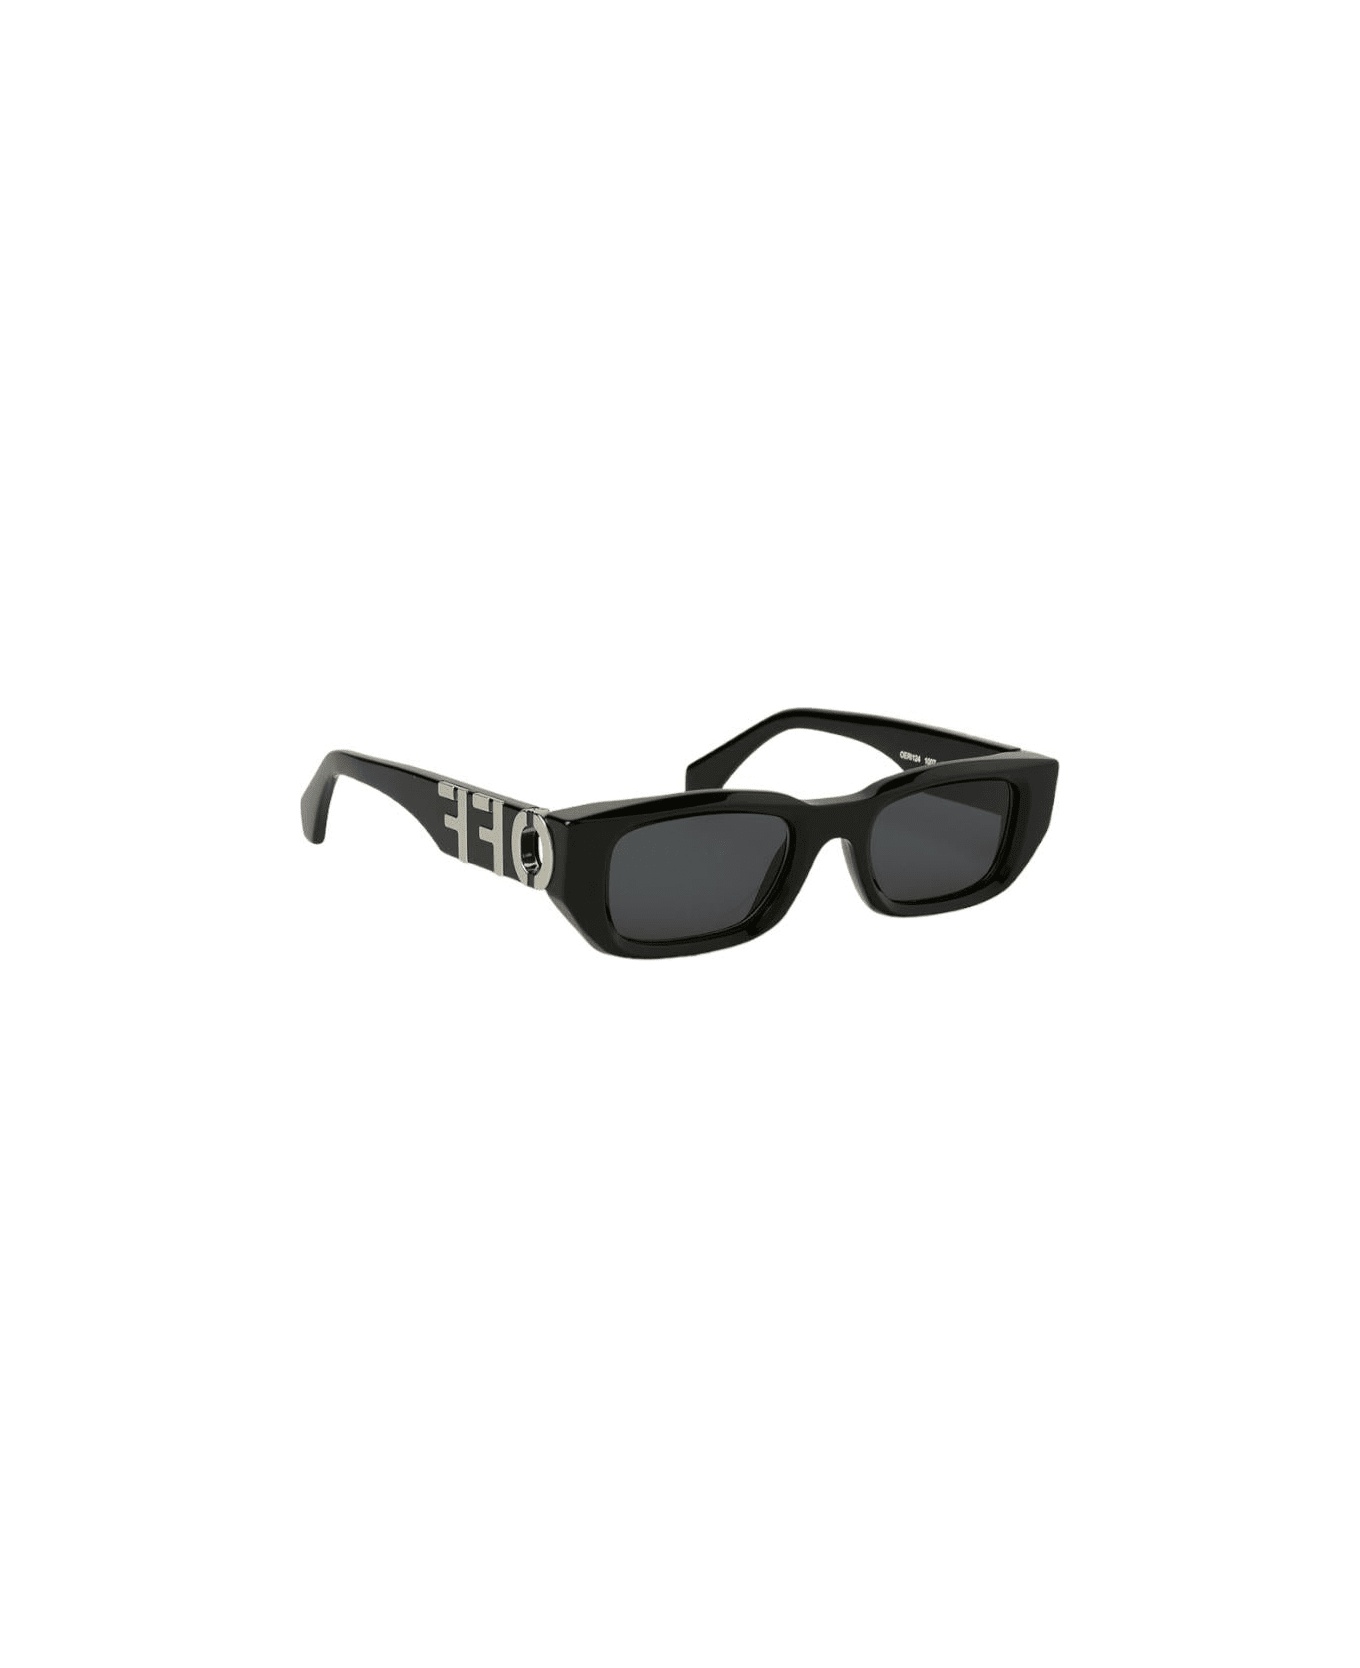 Fillmore - Oeri124 Sunglasses - 2